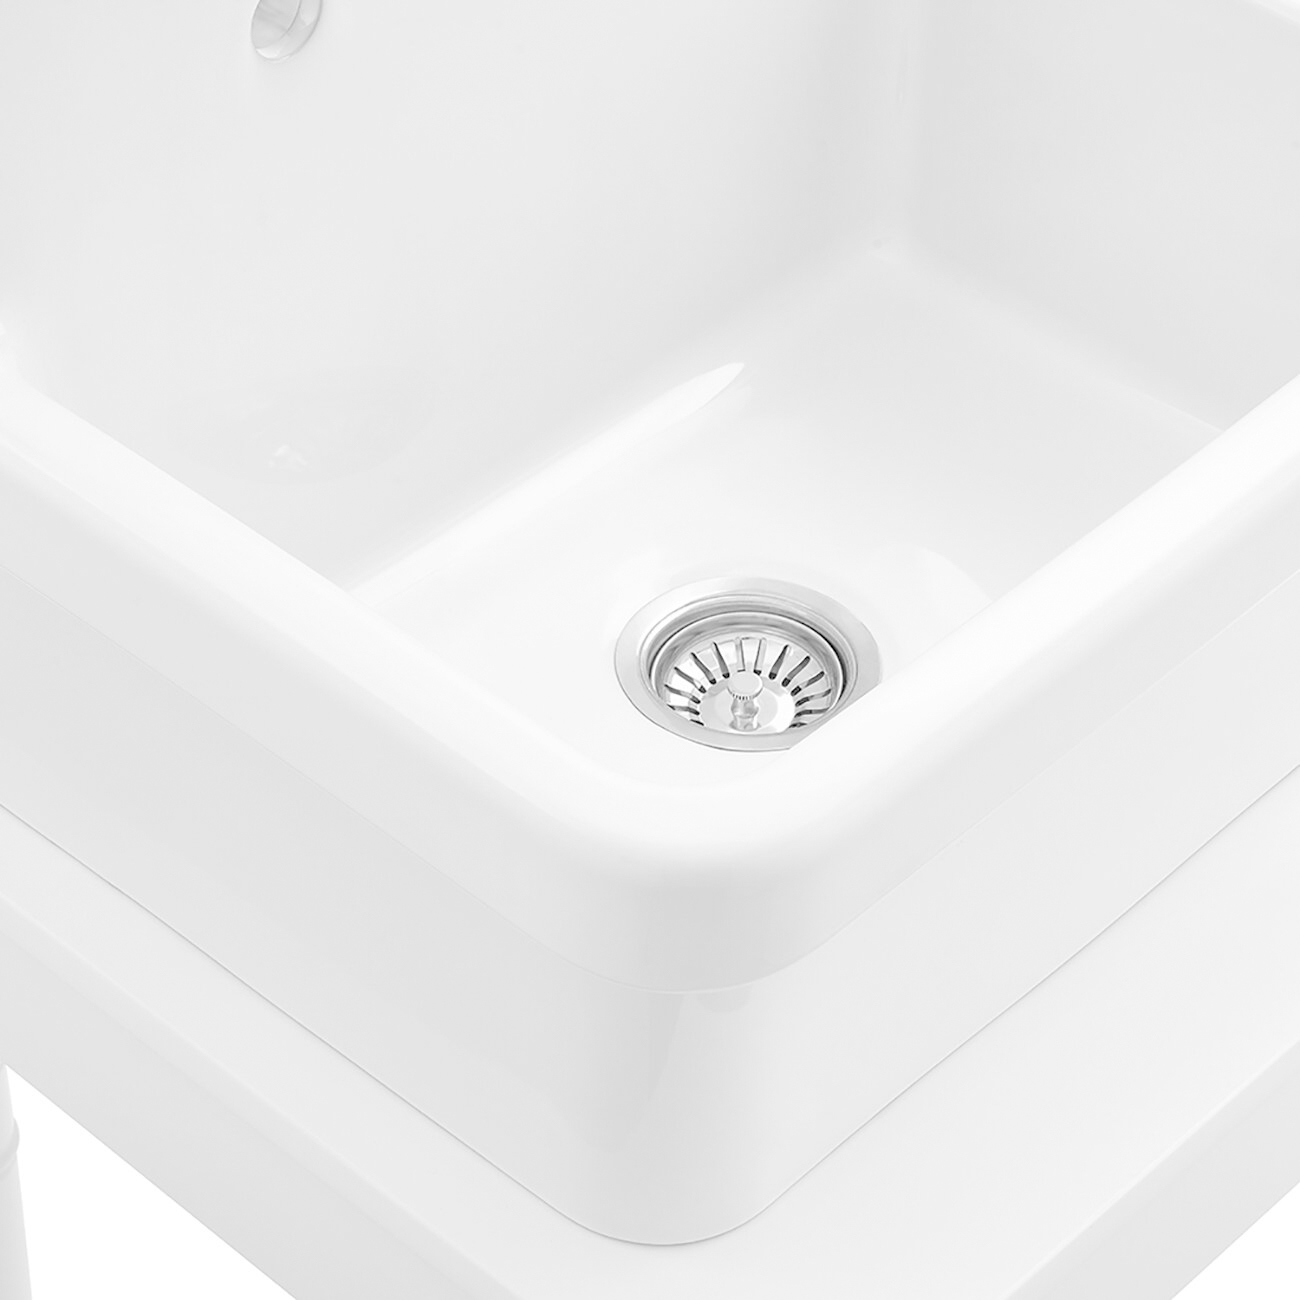 Lavandino per lavanderia a parete in ceramica Aquacubic con spaziatura del rubinetto da 1,5 pollici